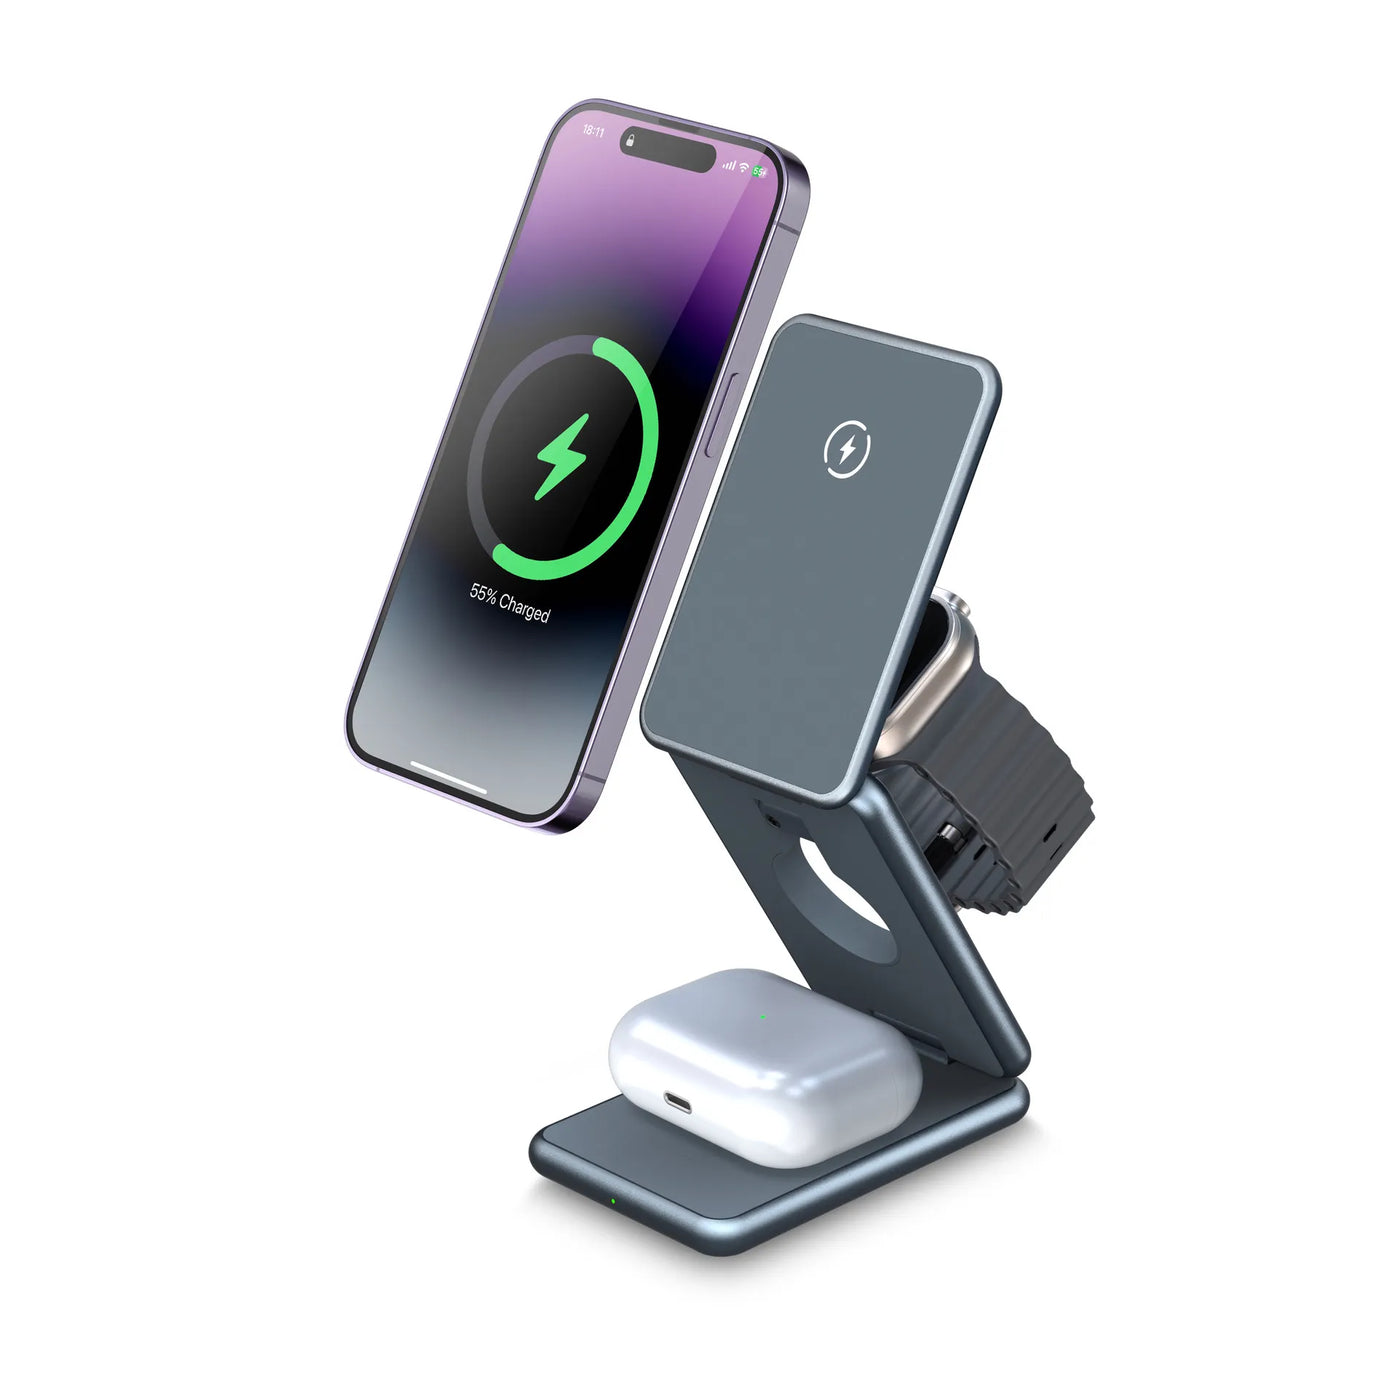 Chargeur iPhone MagSafe Protective Skin lot de 2 Skin avant et arrière  chargeur non inclus -  France